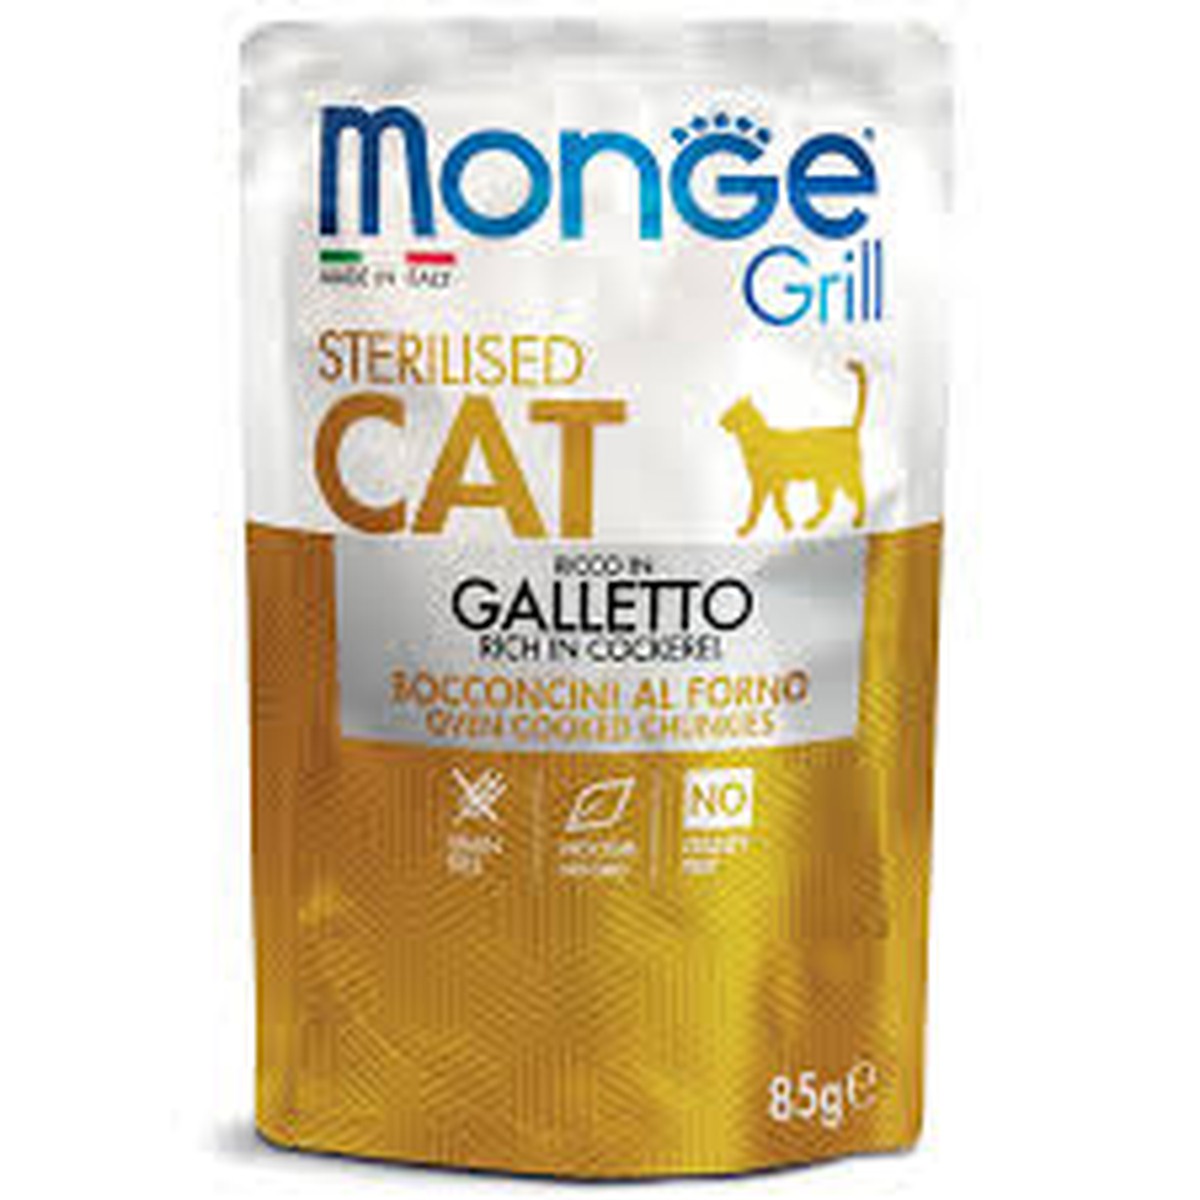 Monge  Monge Grill Cat Sterilised Cockerel 85g  